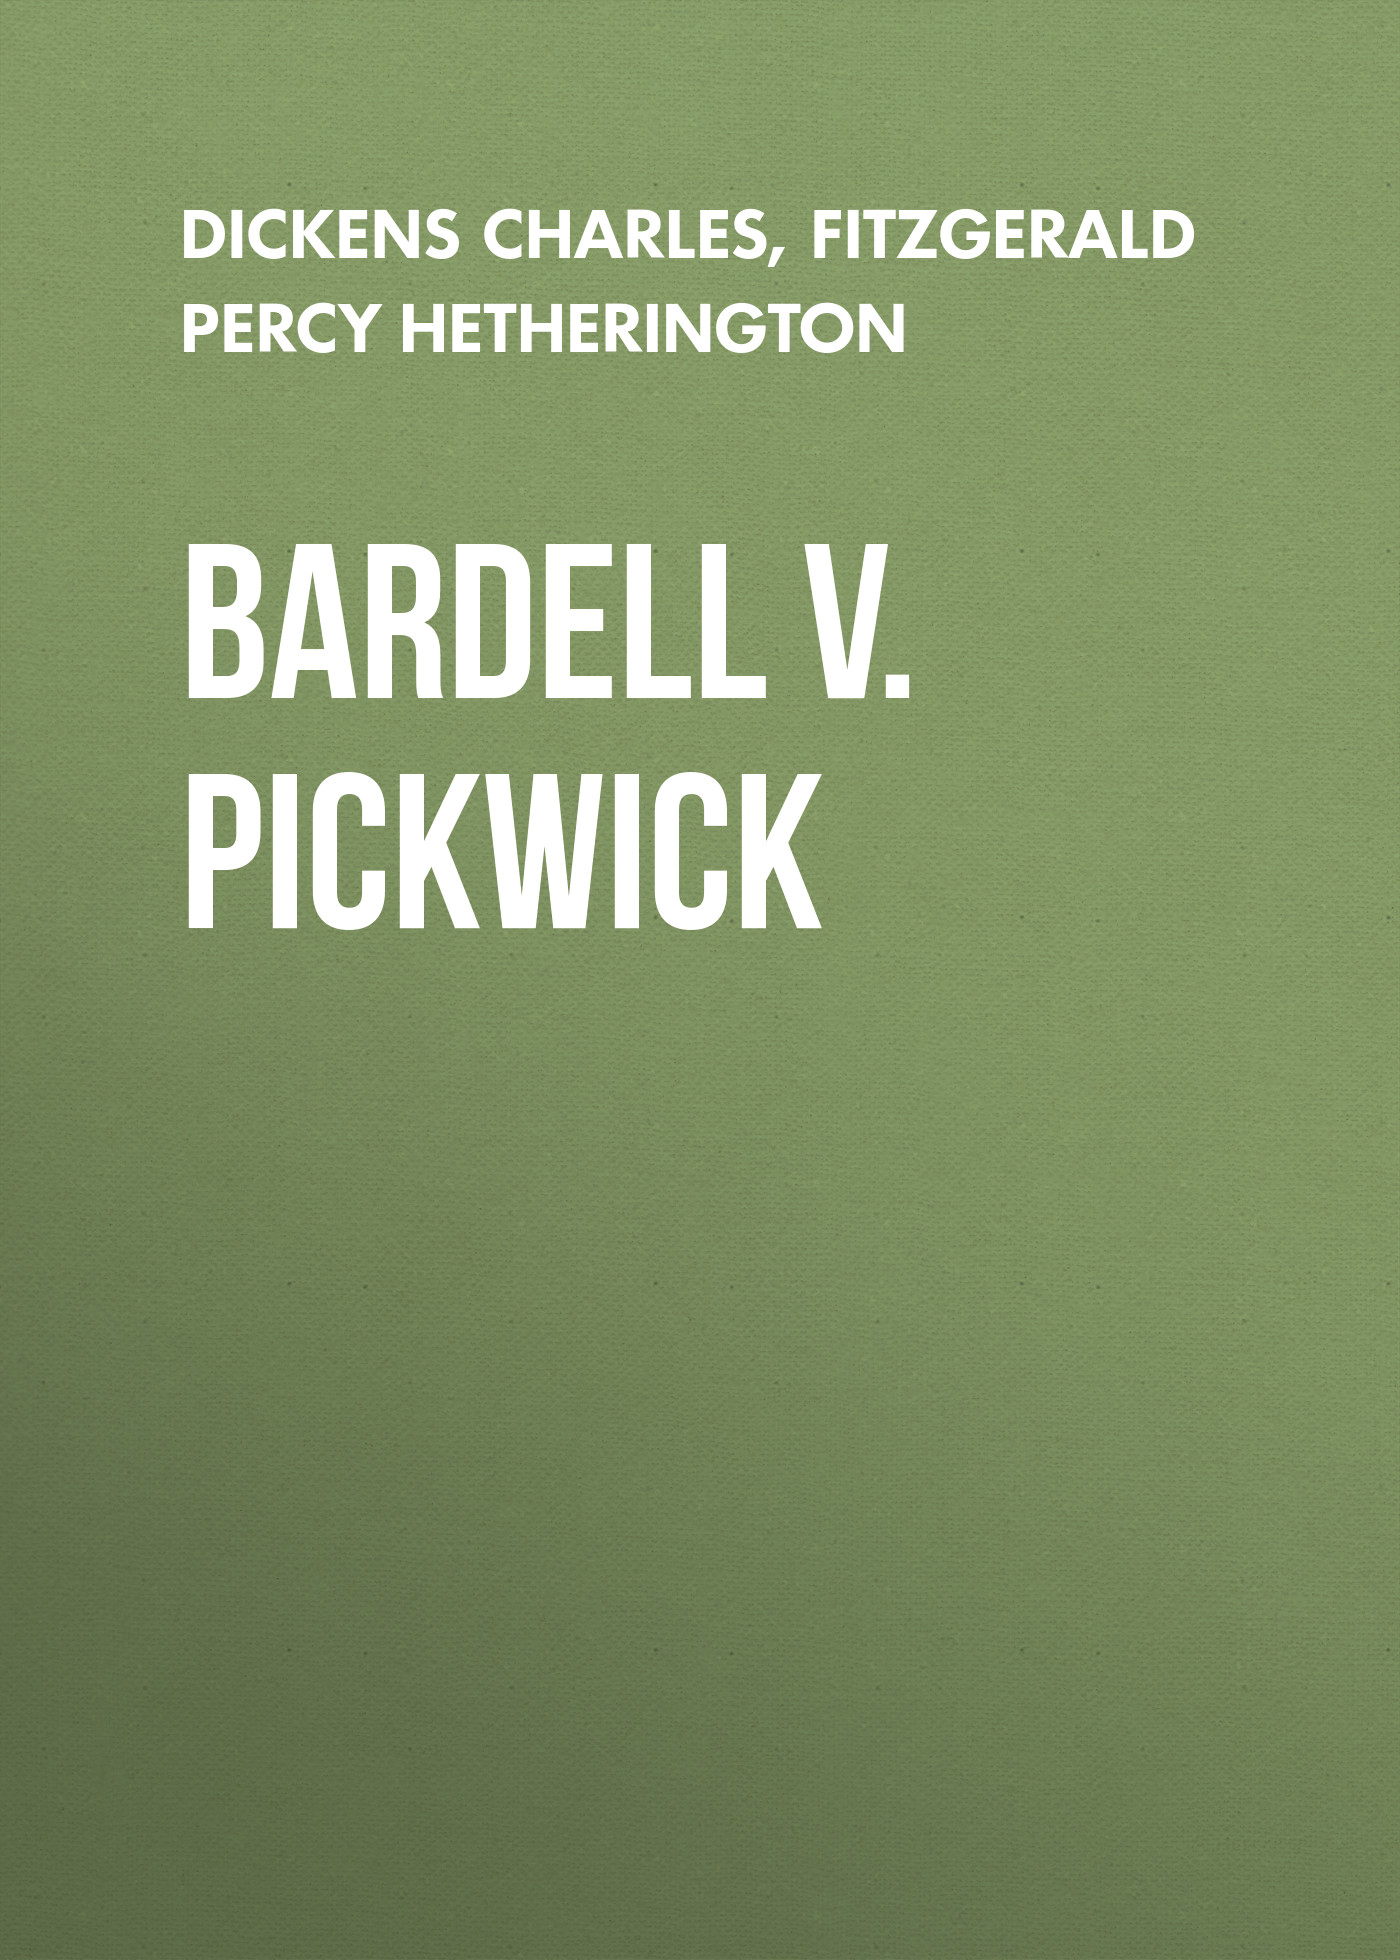 Книга Bardell v. Pickwick из серии , созданная Percy Fitzgerald, Charles Dickens, может относится к жанру Зарубежная старинная литература, Зарубежная классика. Стоимость электронной книги Bardell v. Pickwick с идентификатором 25092476 составляет 0 руб.